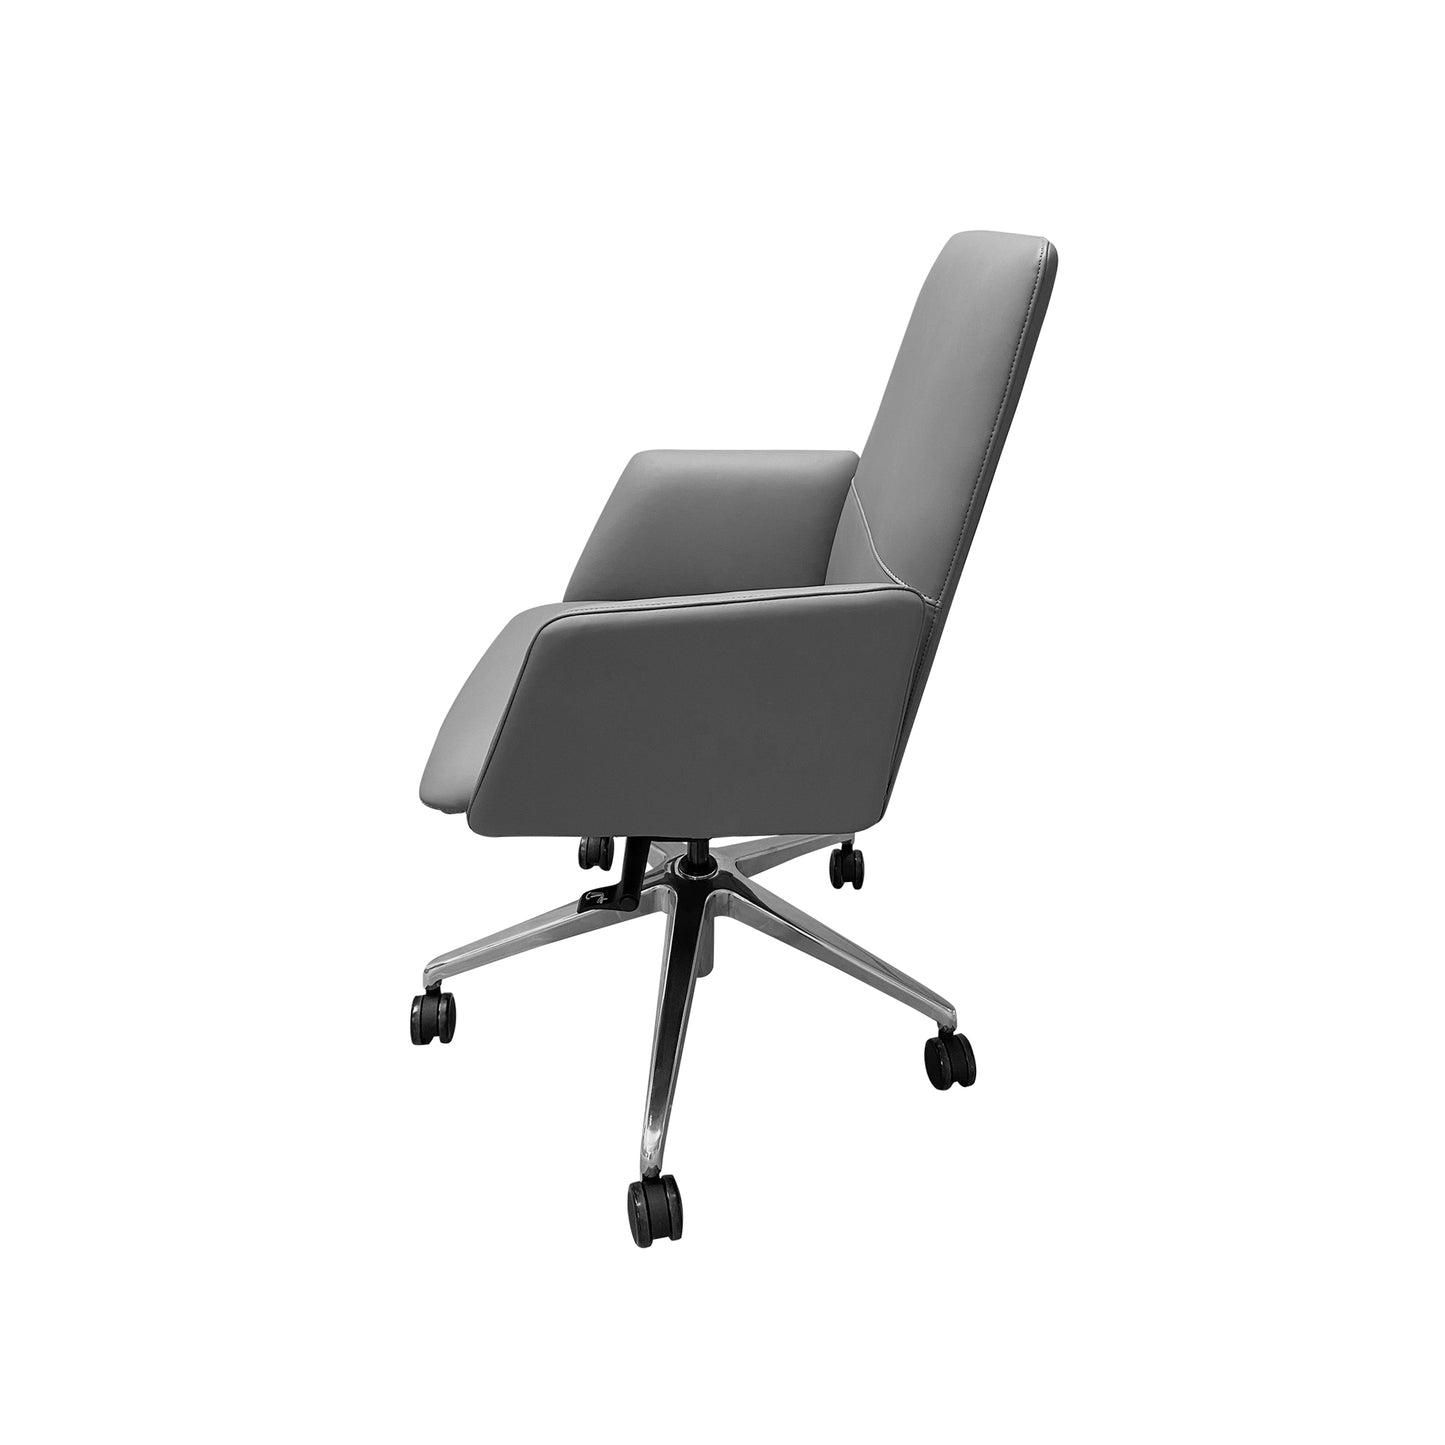 Kenton Office Chair